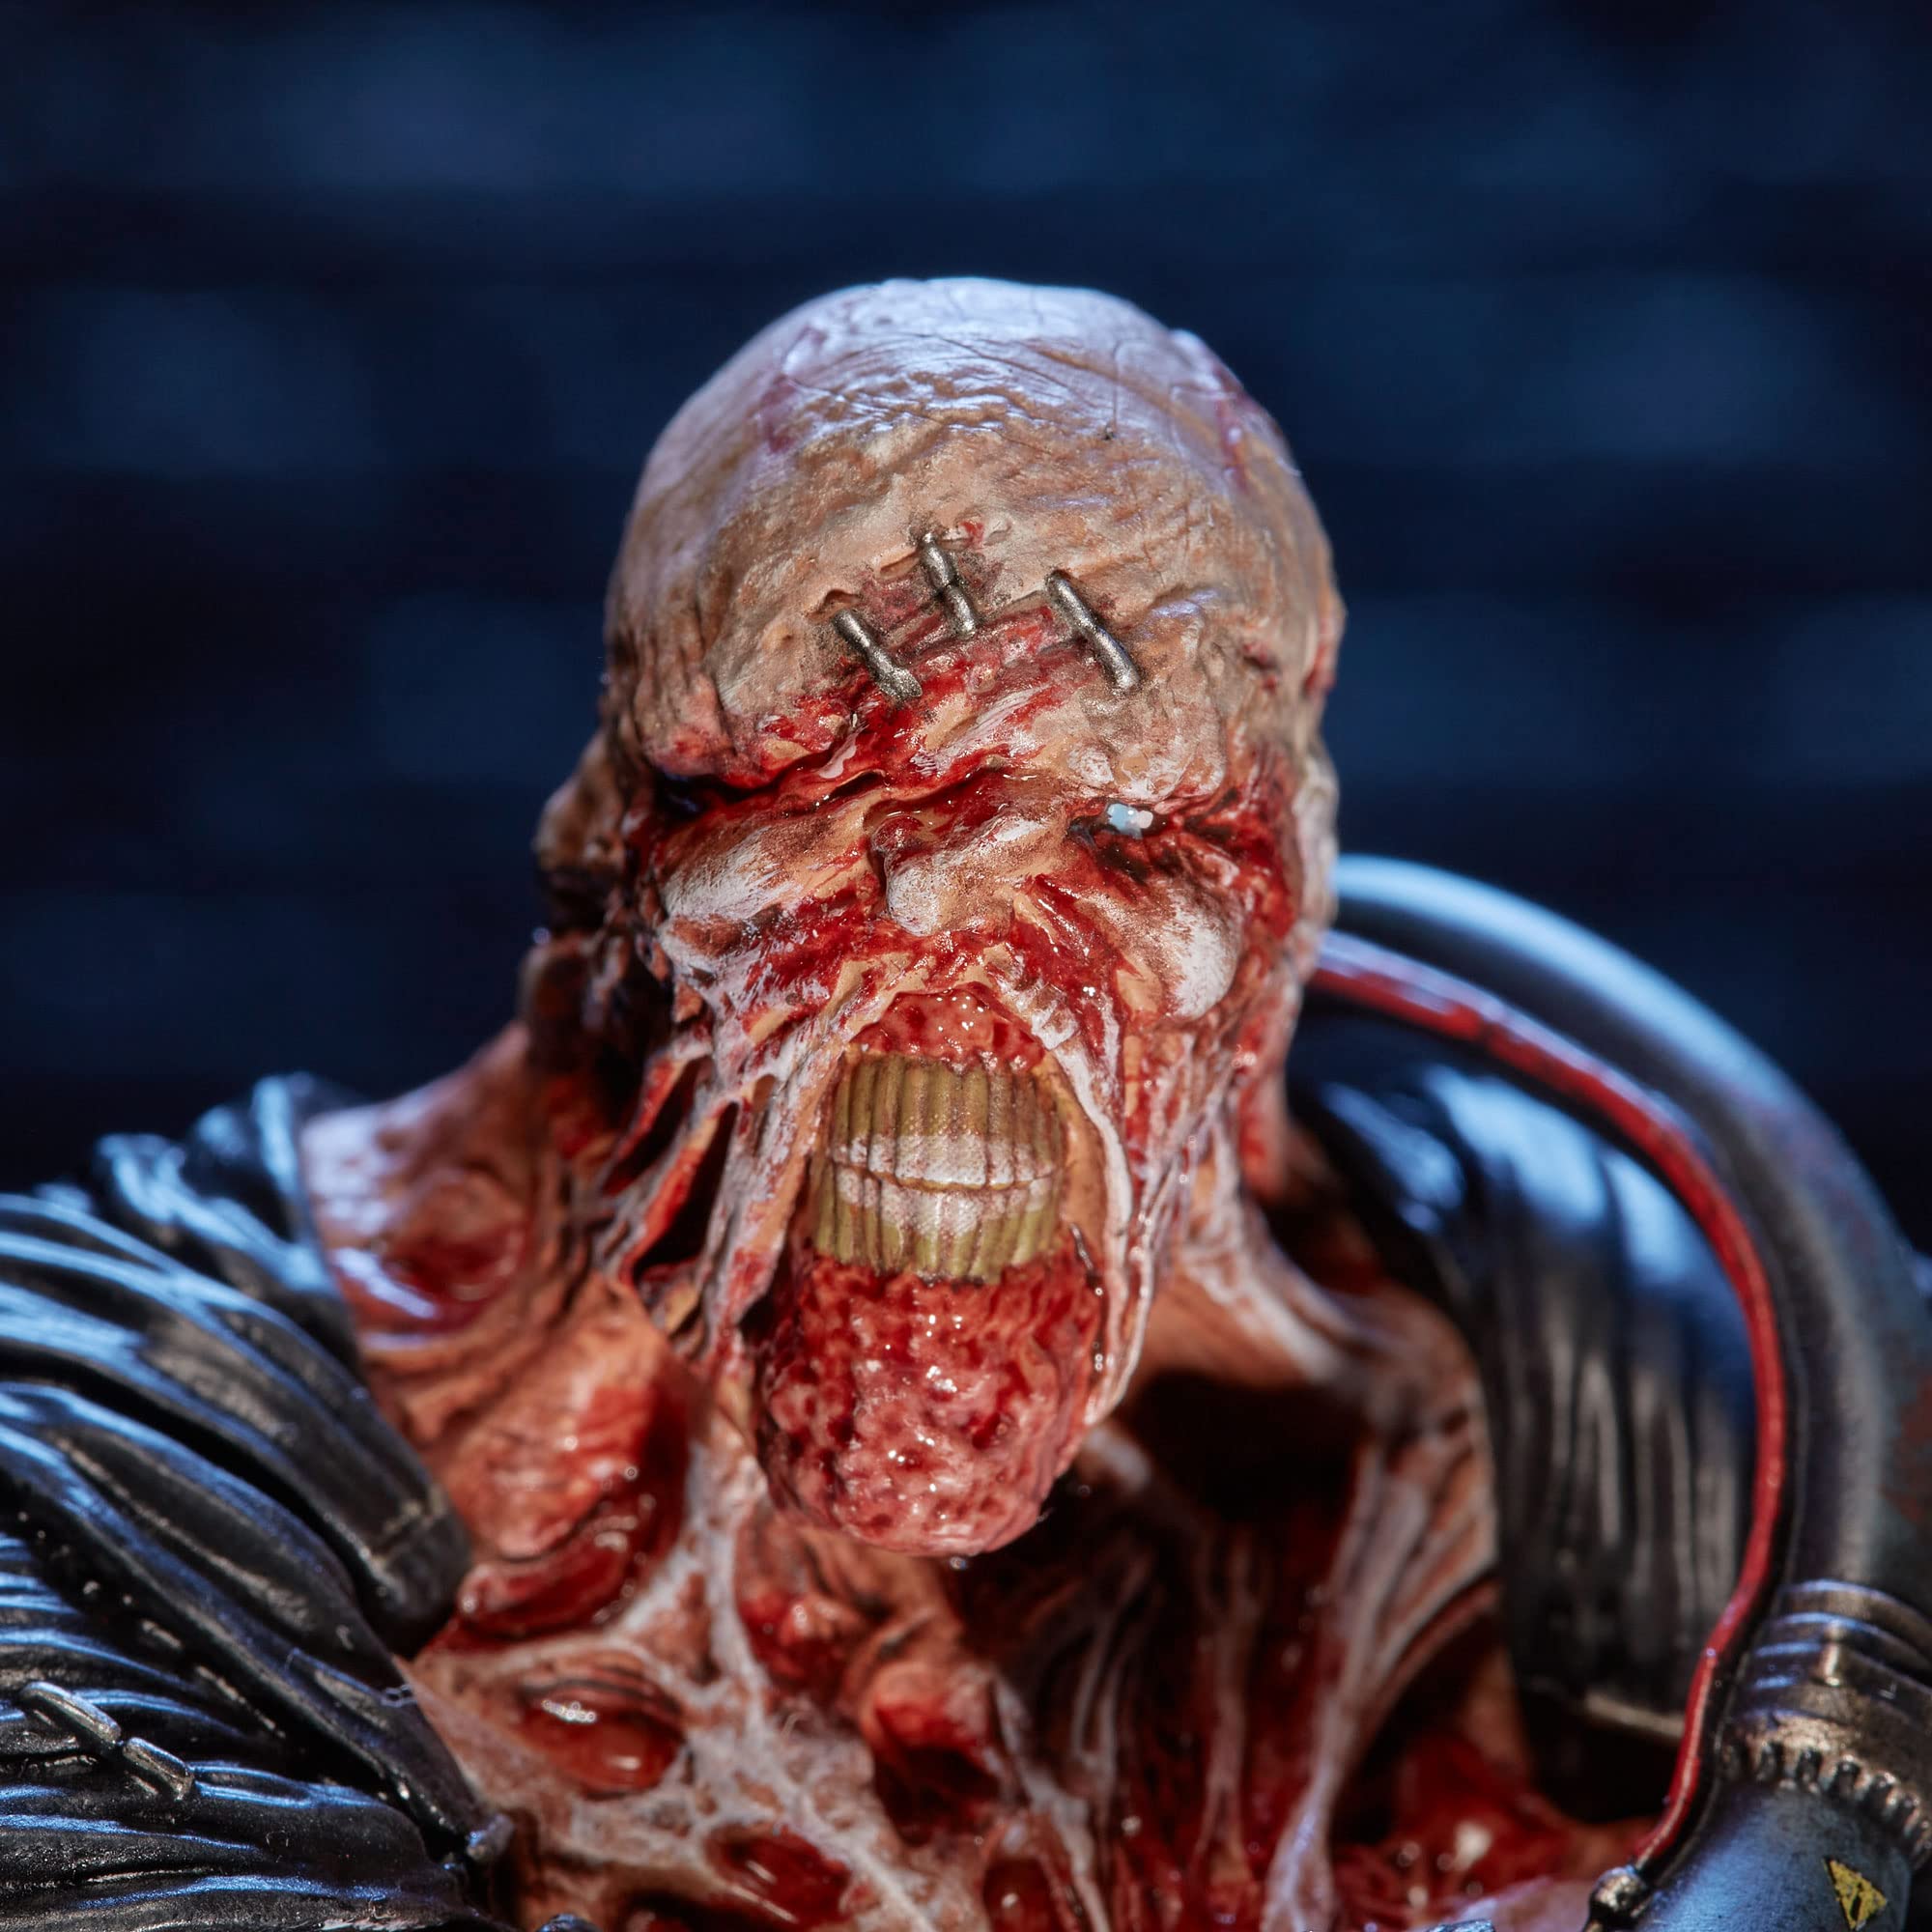 Numskull Resident Evil Nemesis Figure 11